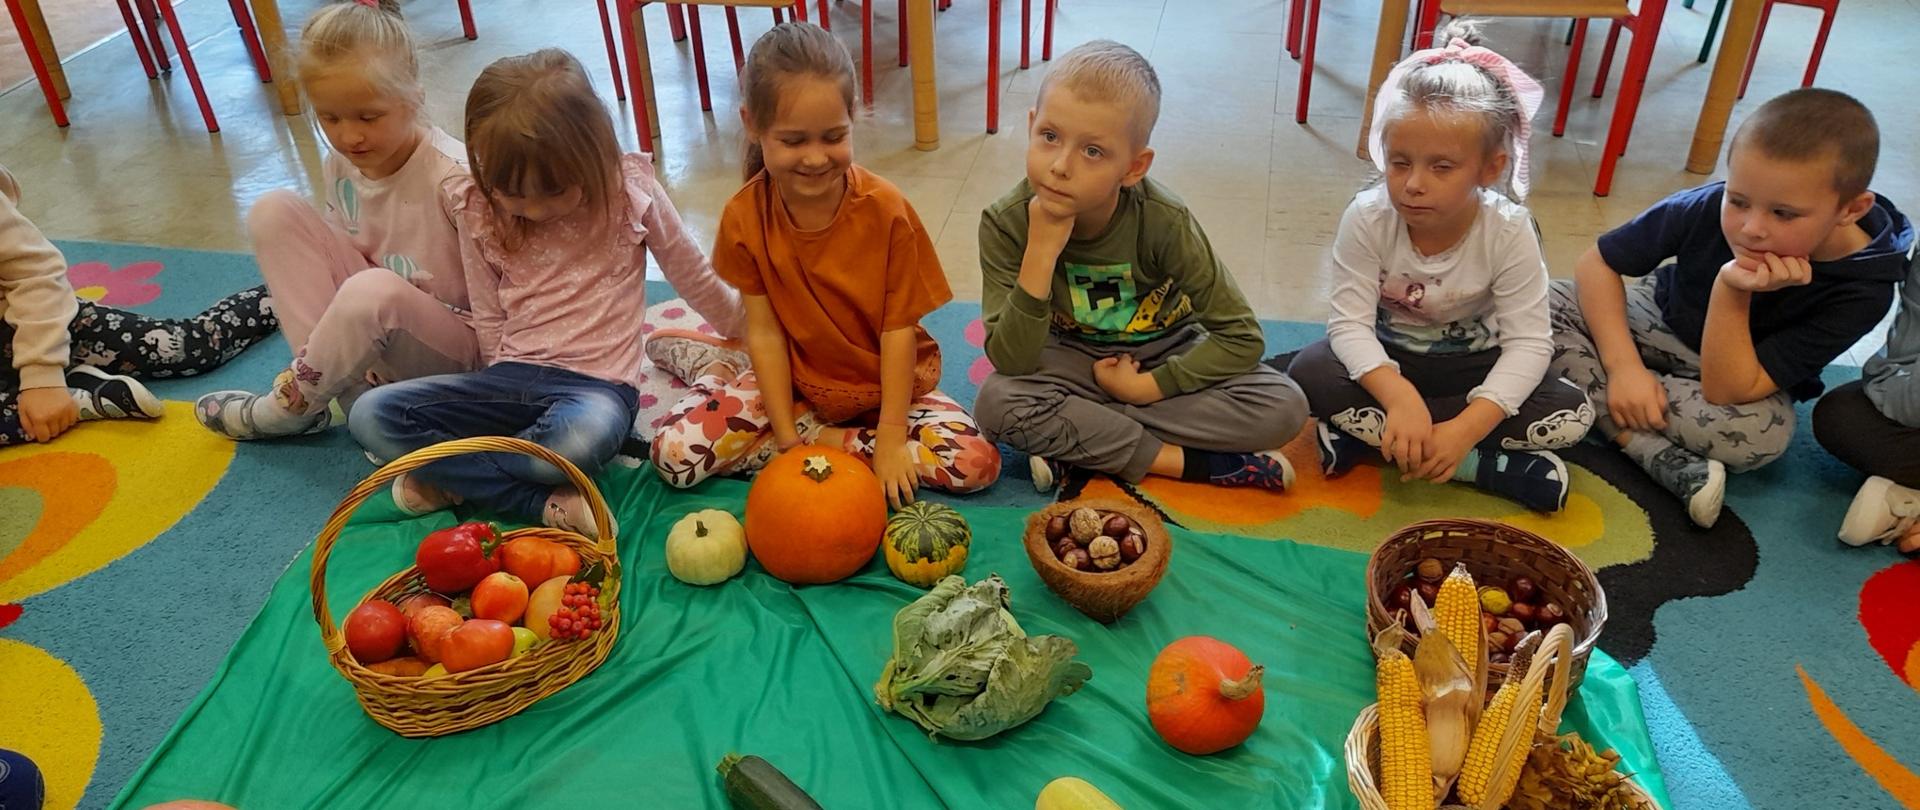 Dzieci siedzą na dywanie, przed nimi kosze z warzywami i owocami jesiennymi